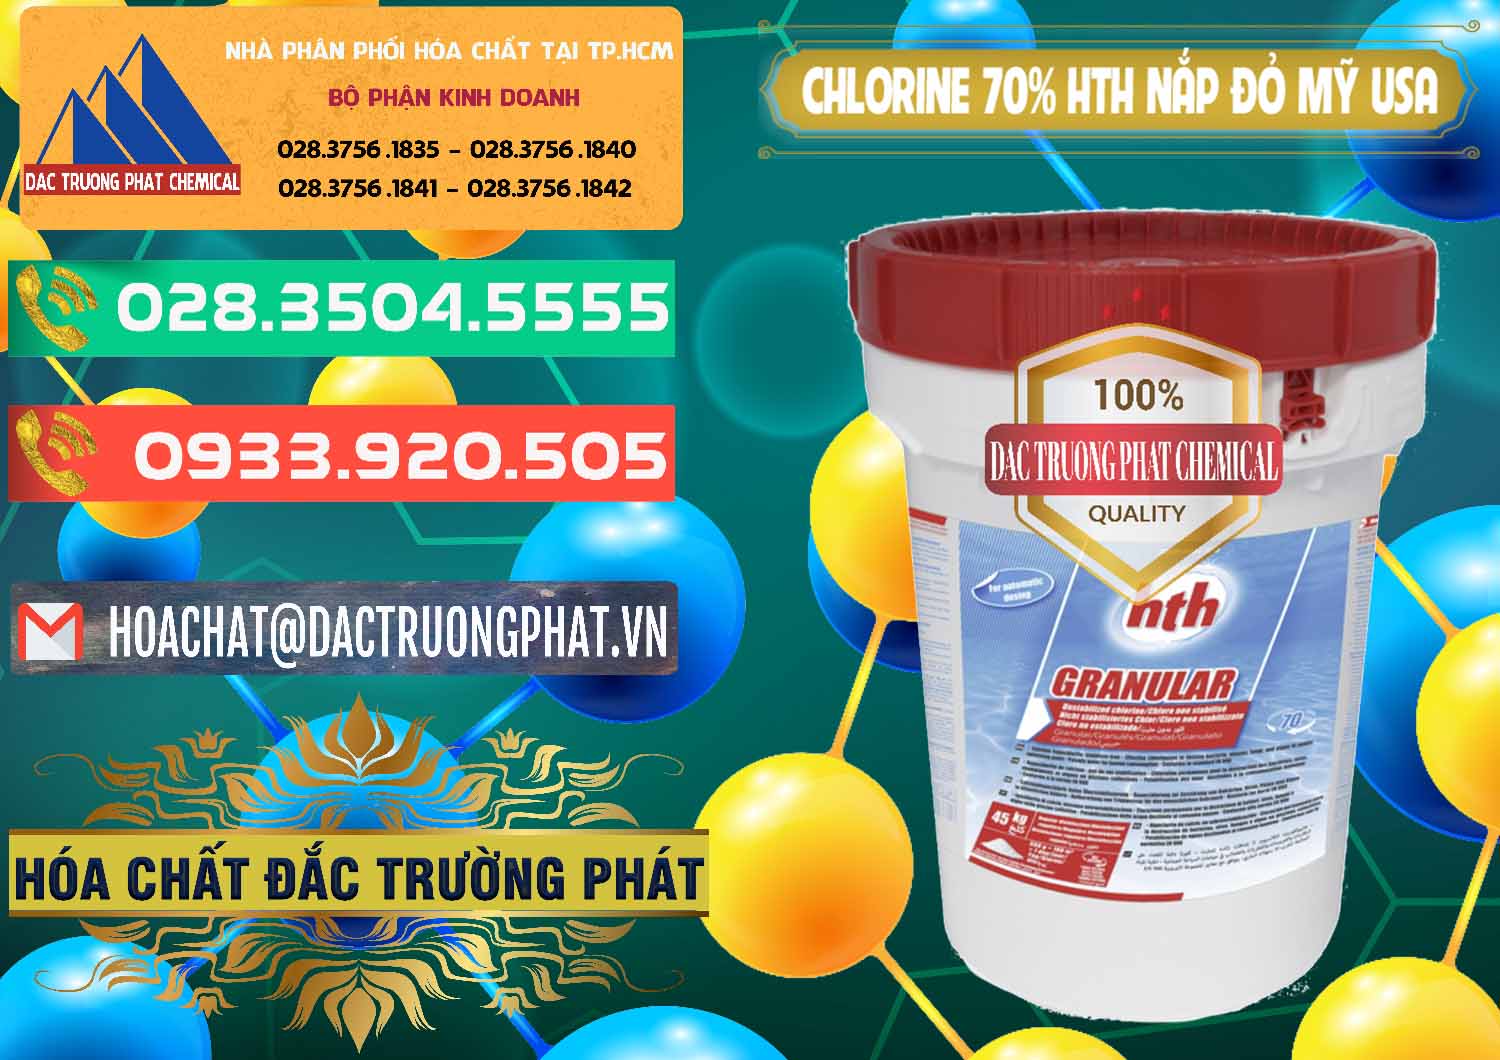 Chuyên cung ứng & bán Clorin – Chlorine 70% HTH Nắp Đỏ Mỹ Usa - 0244 - Cty phân phối và kinh doanh hóa chất tại TP.HCM - congtyhoachat.com.vn